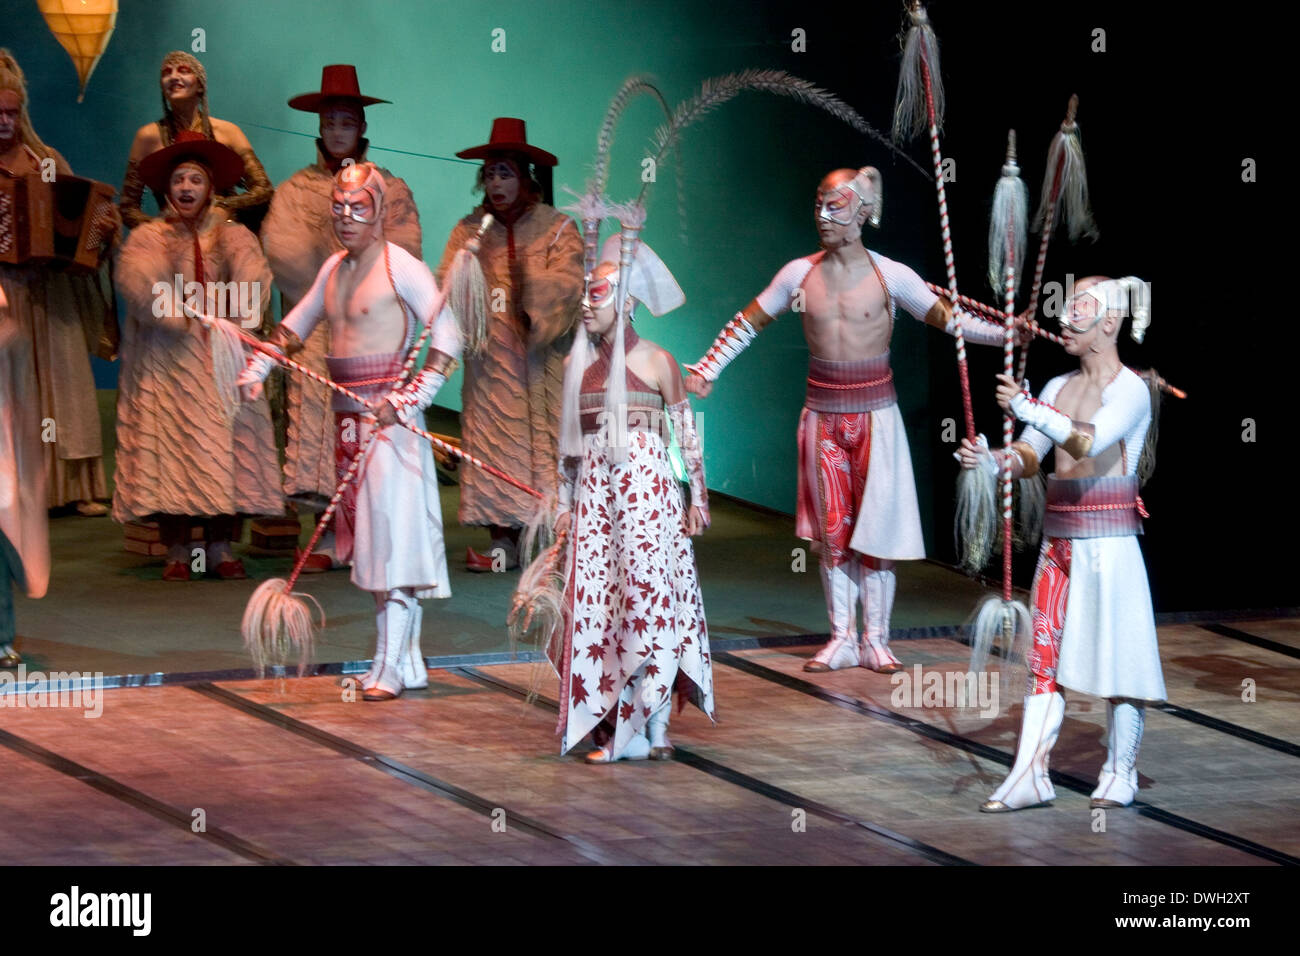 Der faszinierende Cirque du Soleil show KA im MGM Grand, Las Vegas, Nevada,  USA Stockfotografie - Alamy